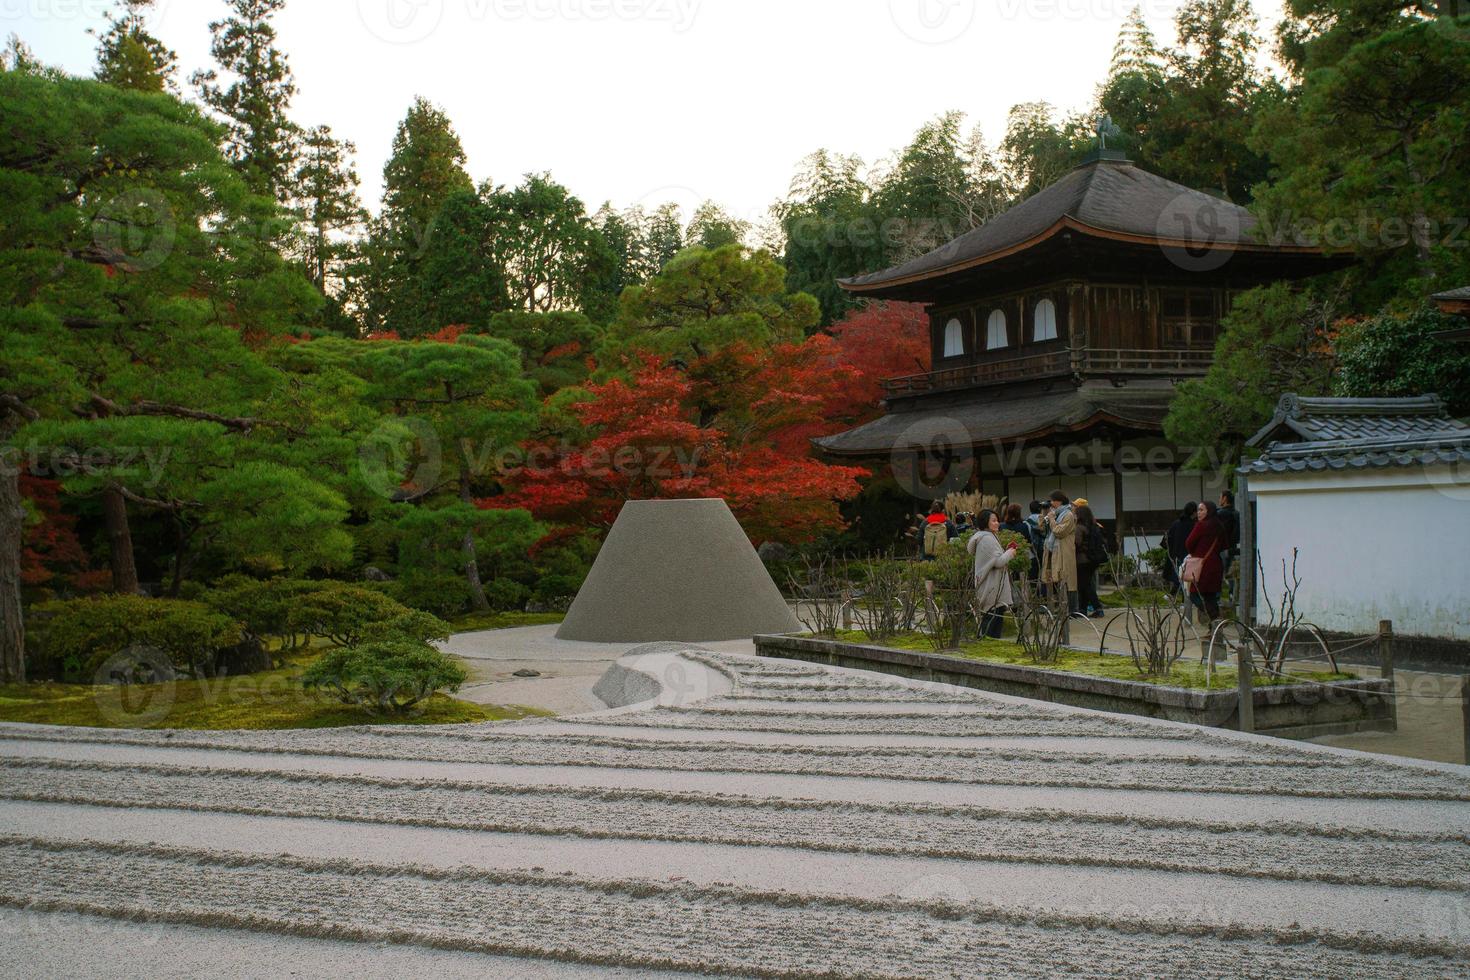 ginshaden-sandgarten, zengarten oder japanischer steingarten, in ginkaku-ji oder tempel des silbernen pavillons, offiziell jisho-ji genannt, oder tempel der leuchtenden gnädigkeit, kyoto, kansai, japan foto